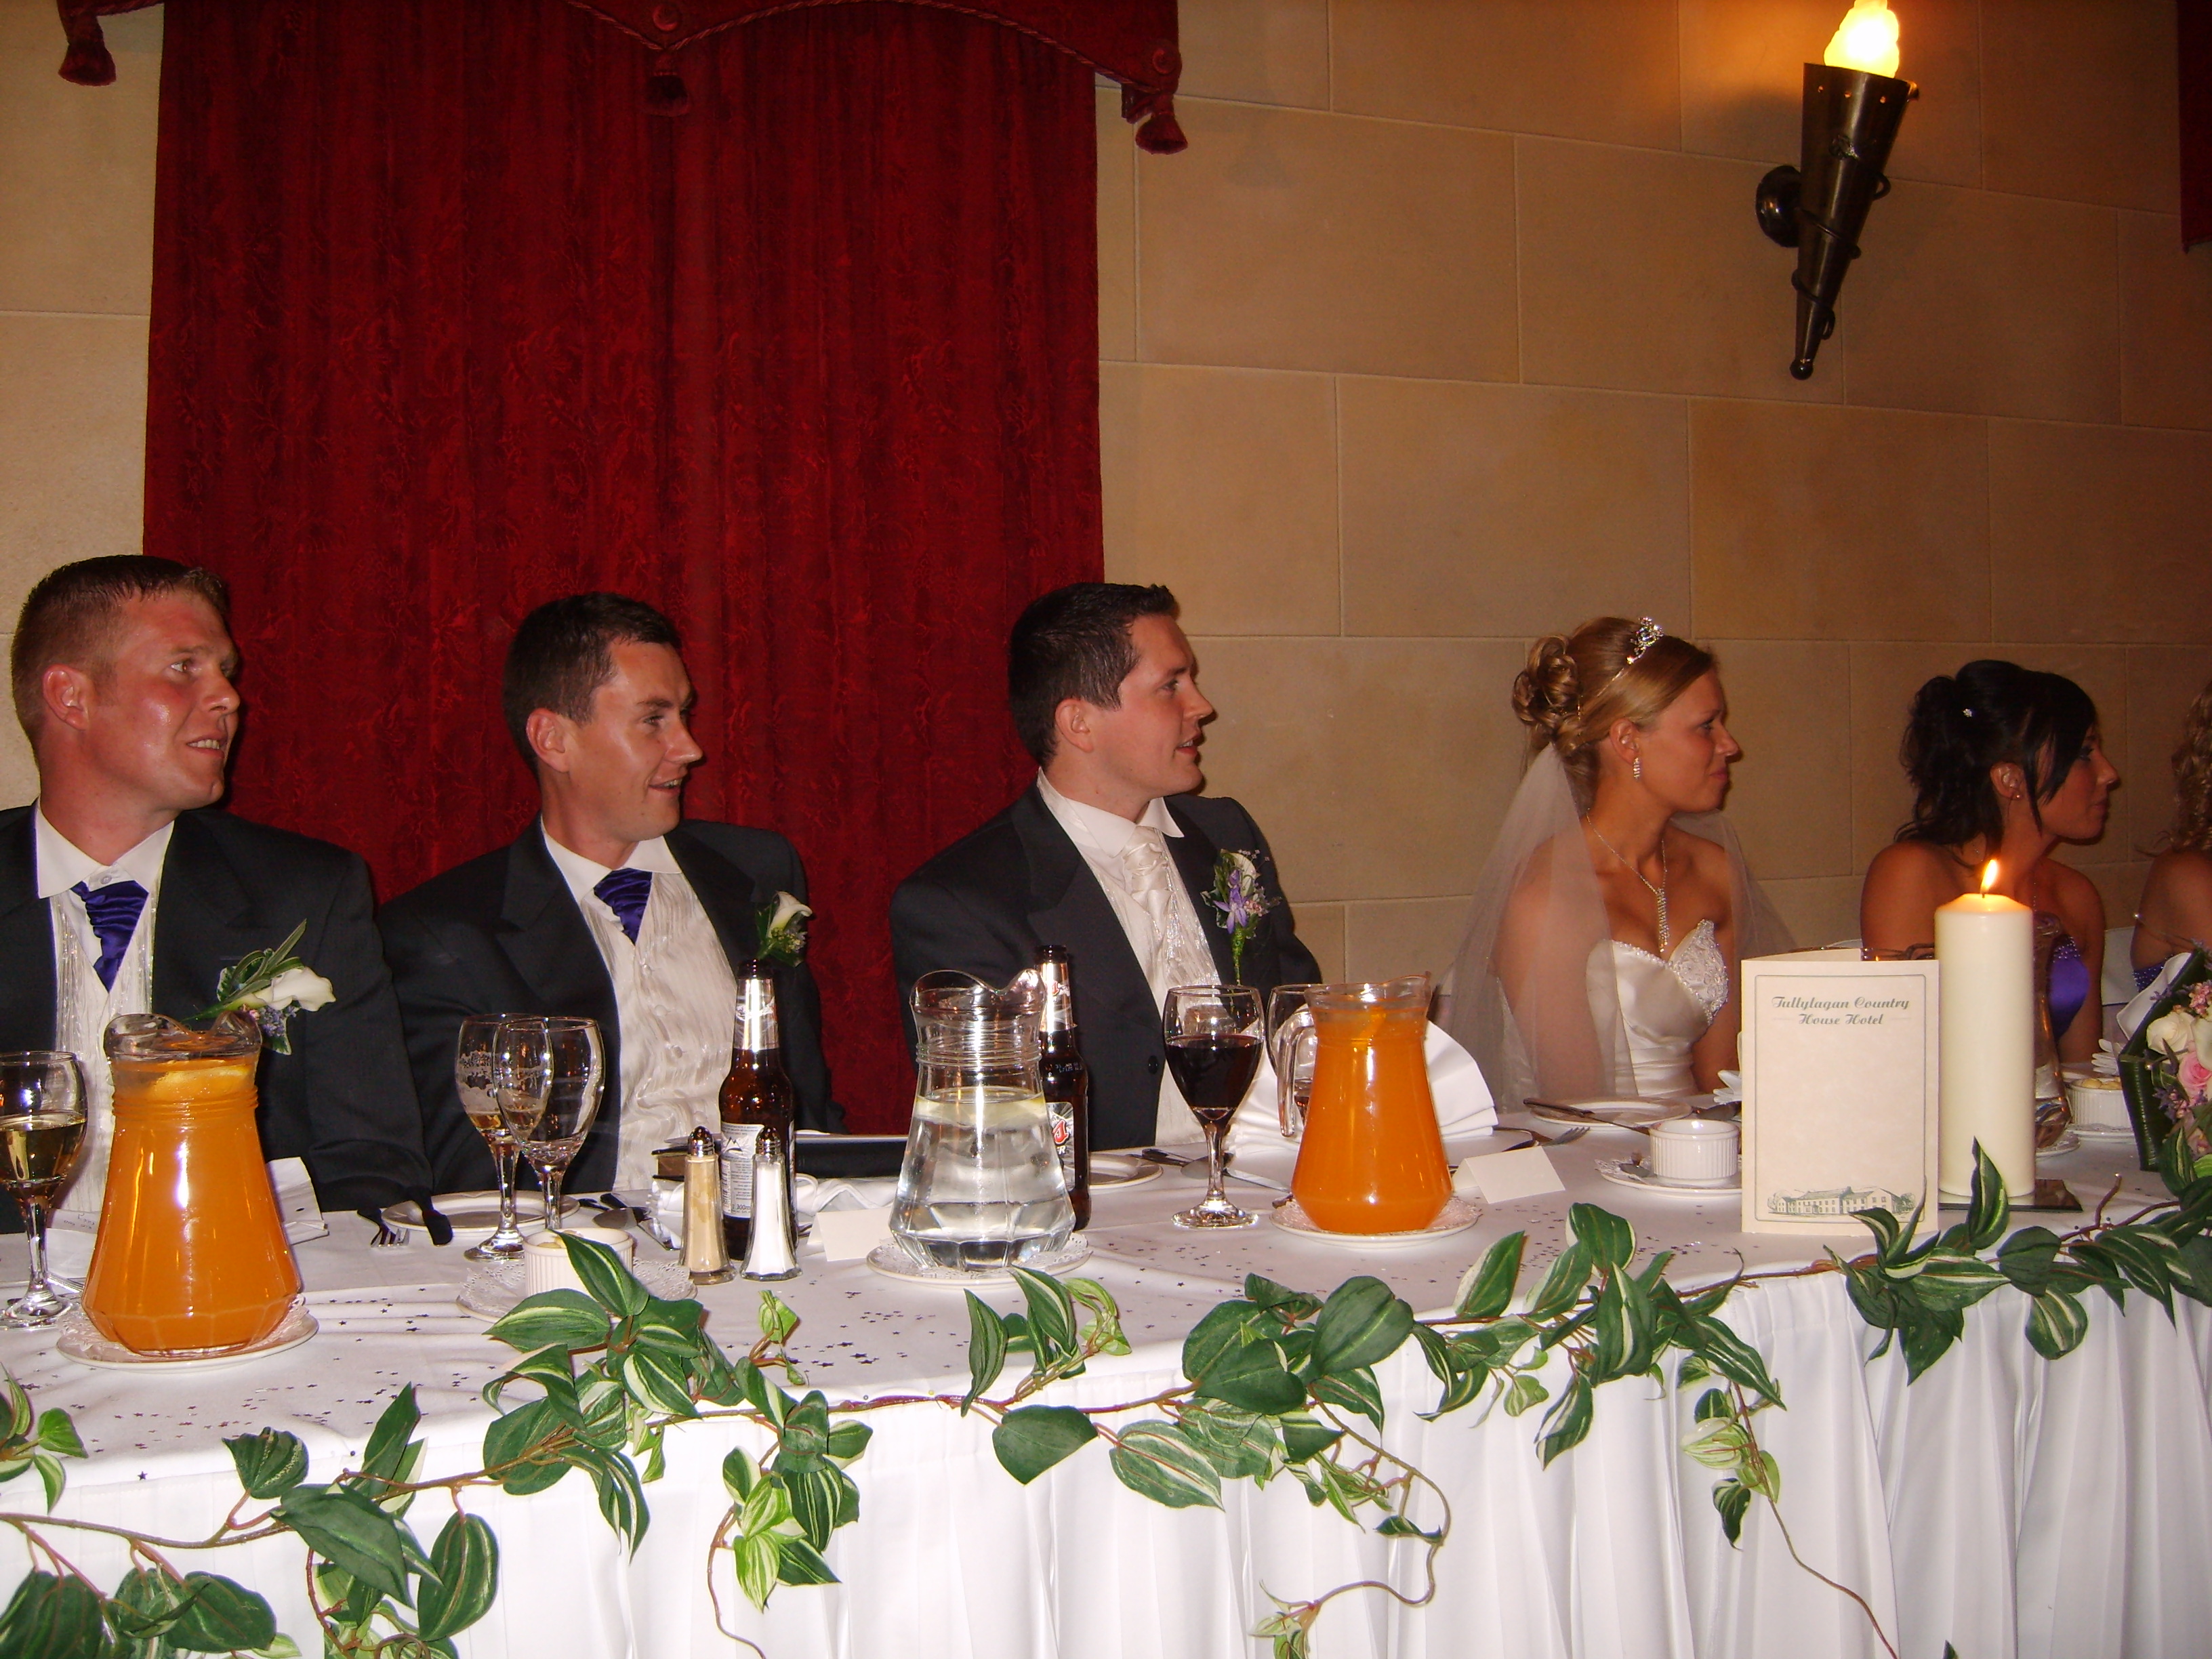 Guests at a wedding | Source: Flickr.com